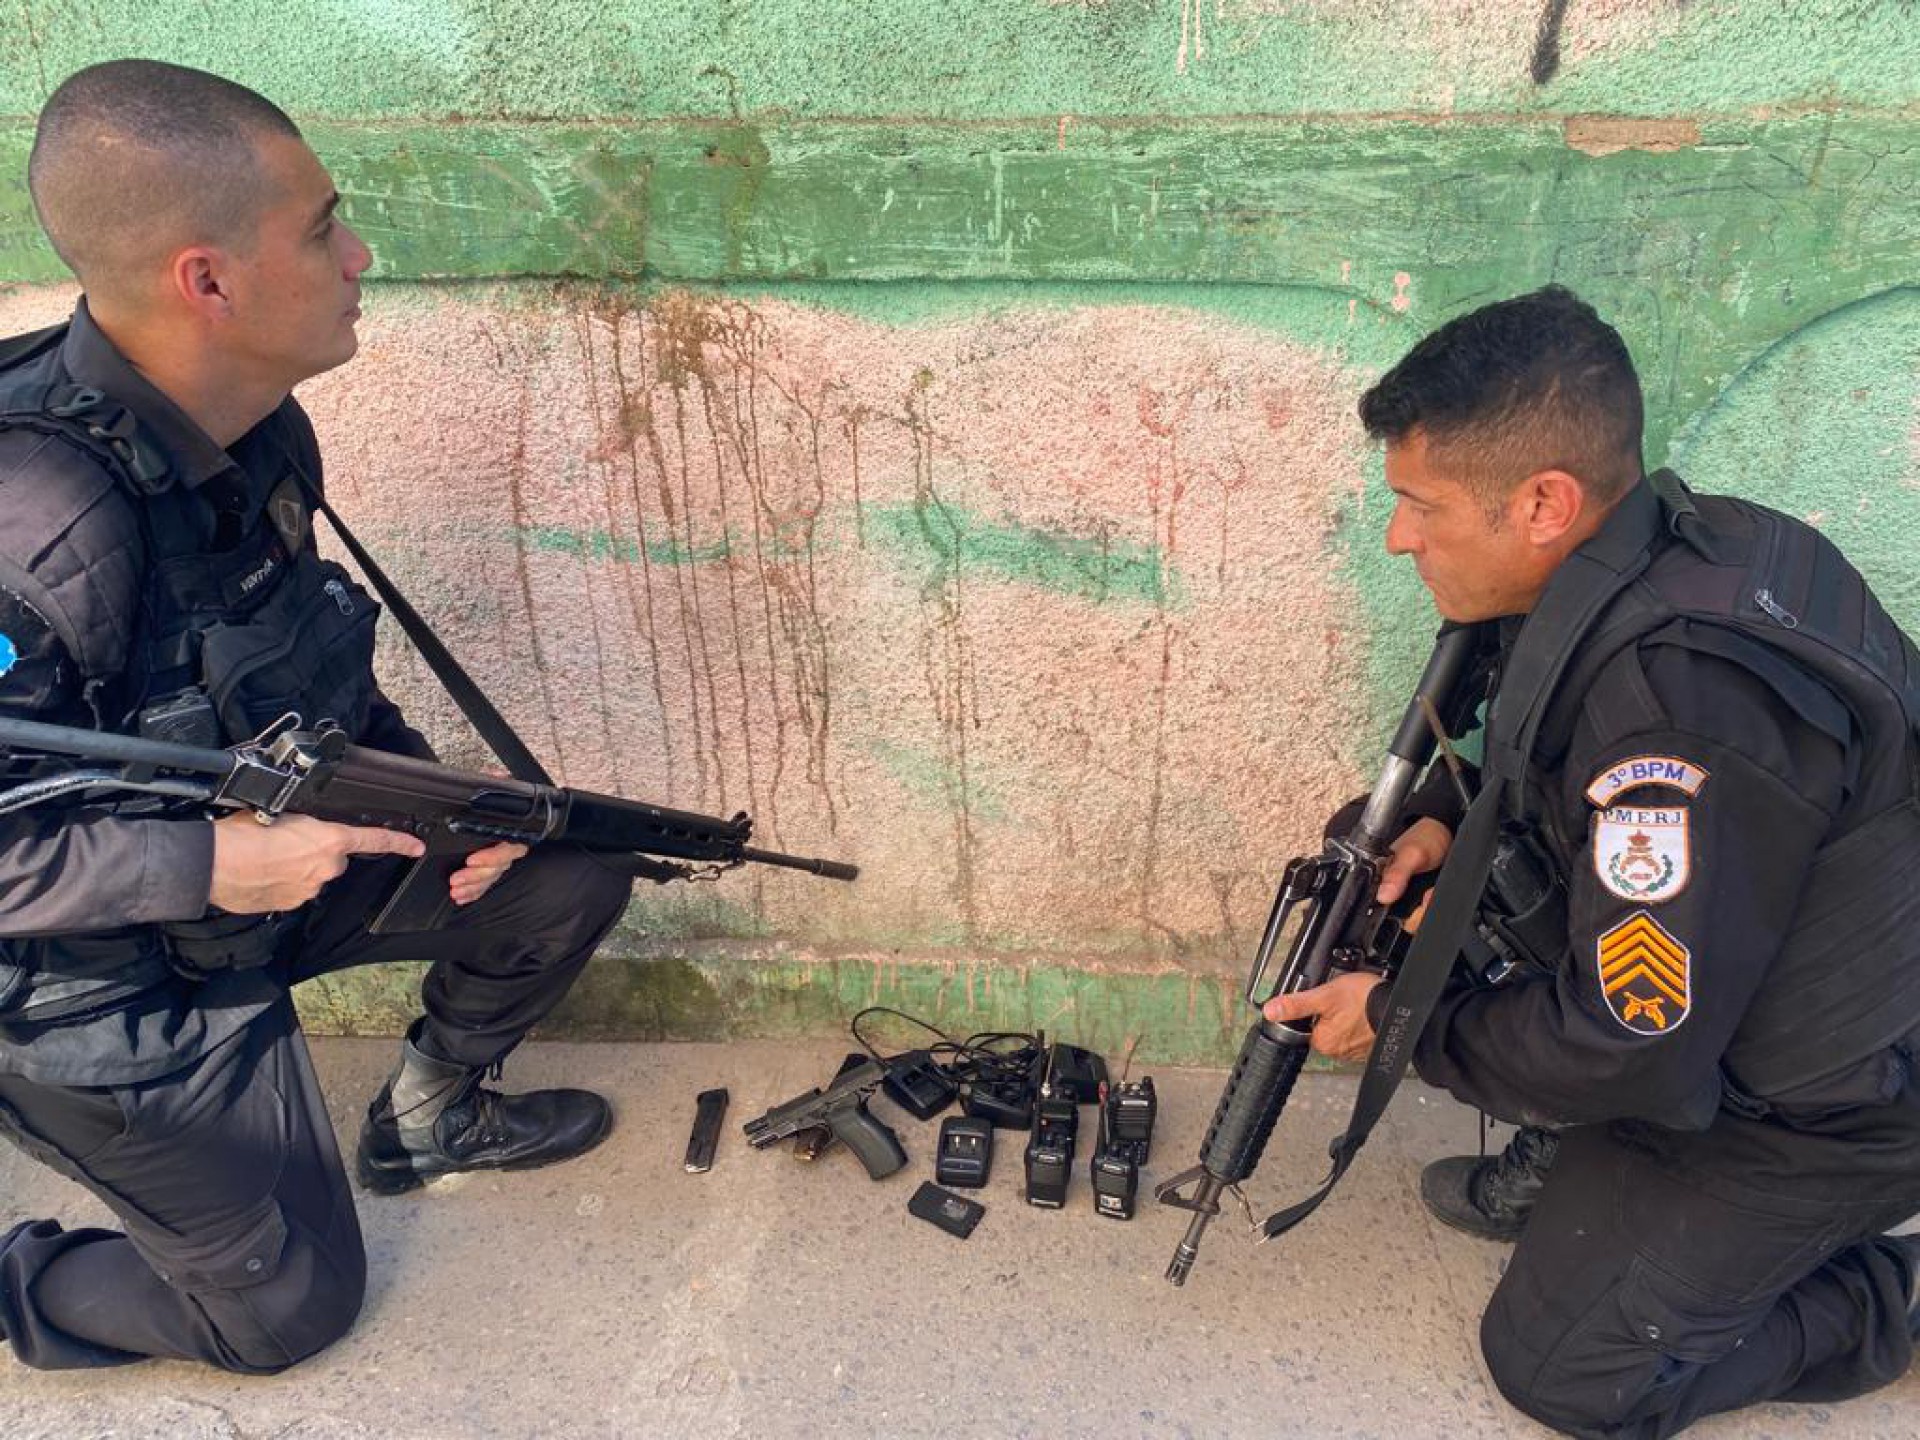 Policiais apreendem uma pistola, carregador, munições, quatro rádios transmissores e bases para carregamento dos aparelhos em operação na Zona Norte - Divulgação/PMERJ